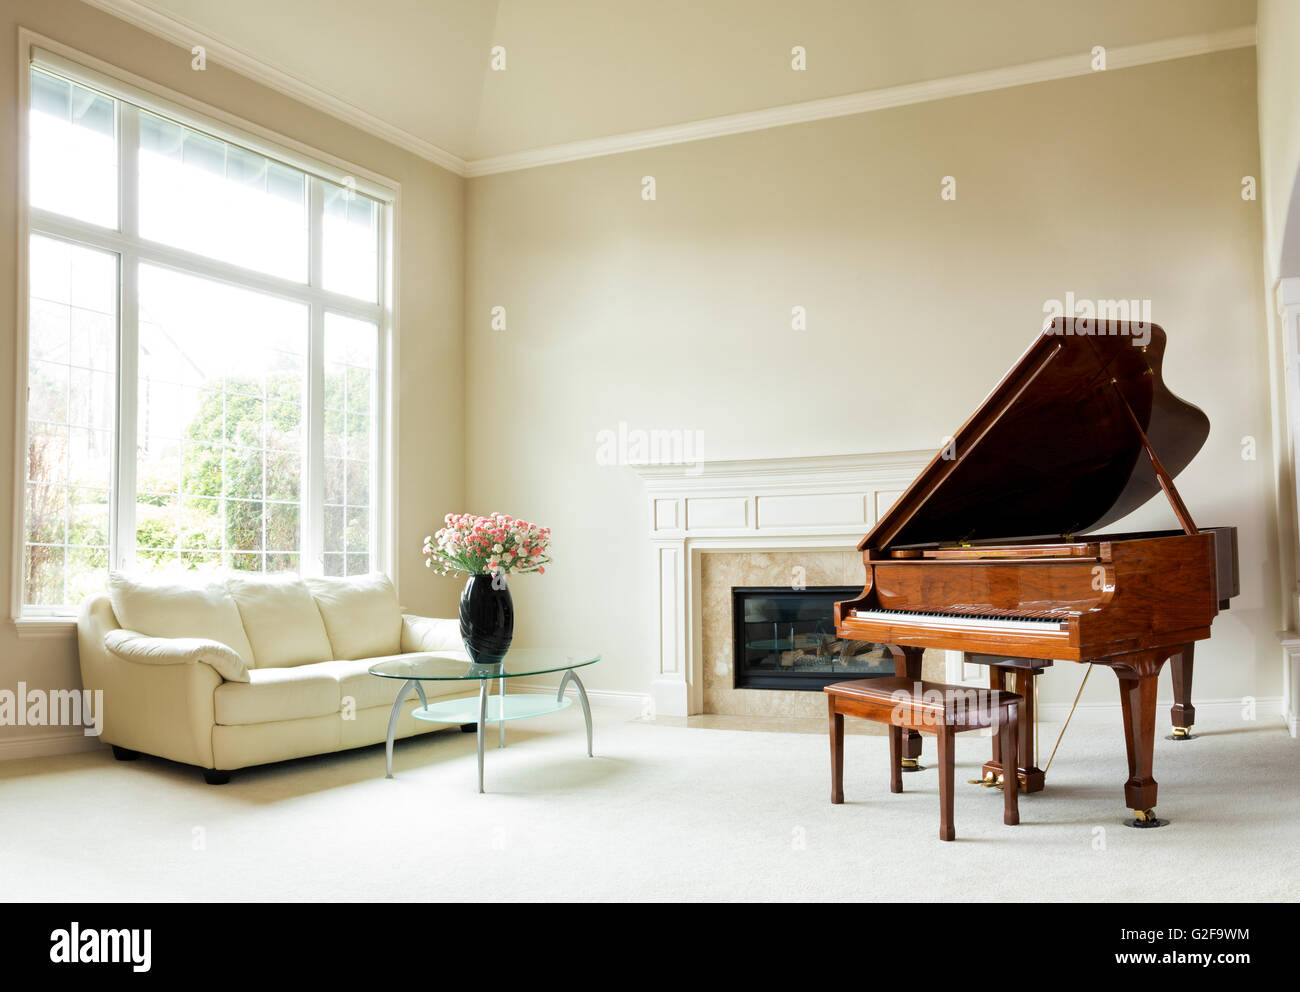 Soggiorno con pianoforte, caminetto, divano e una grande finestra con luminosa luce naturale proveniente attraverso. Foto Stock